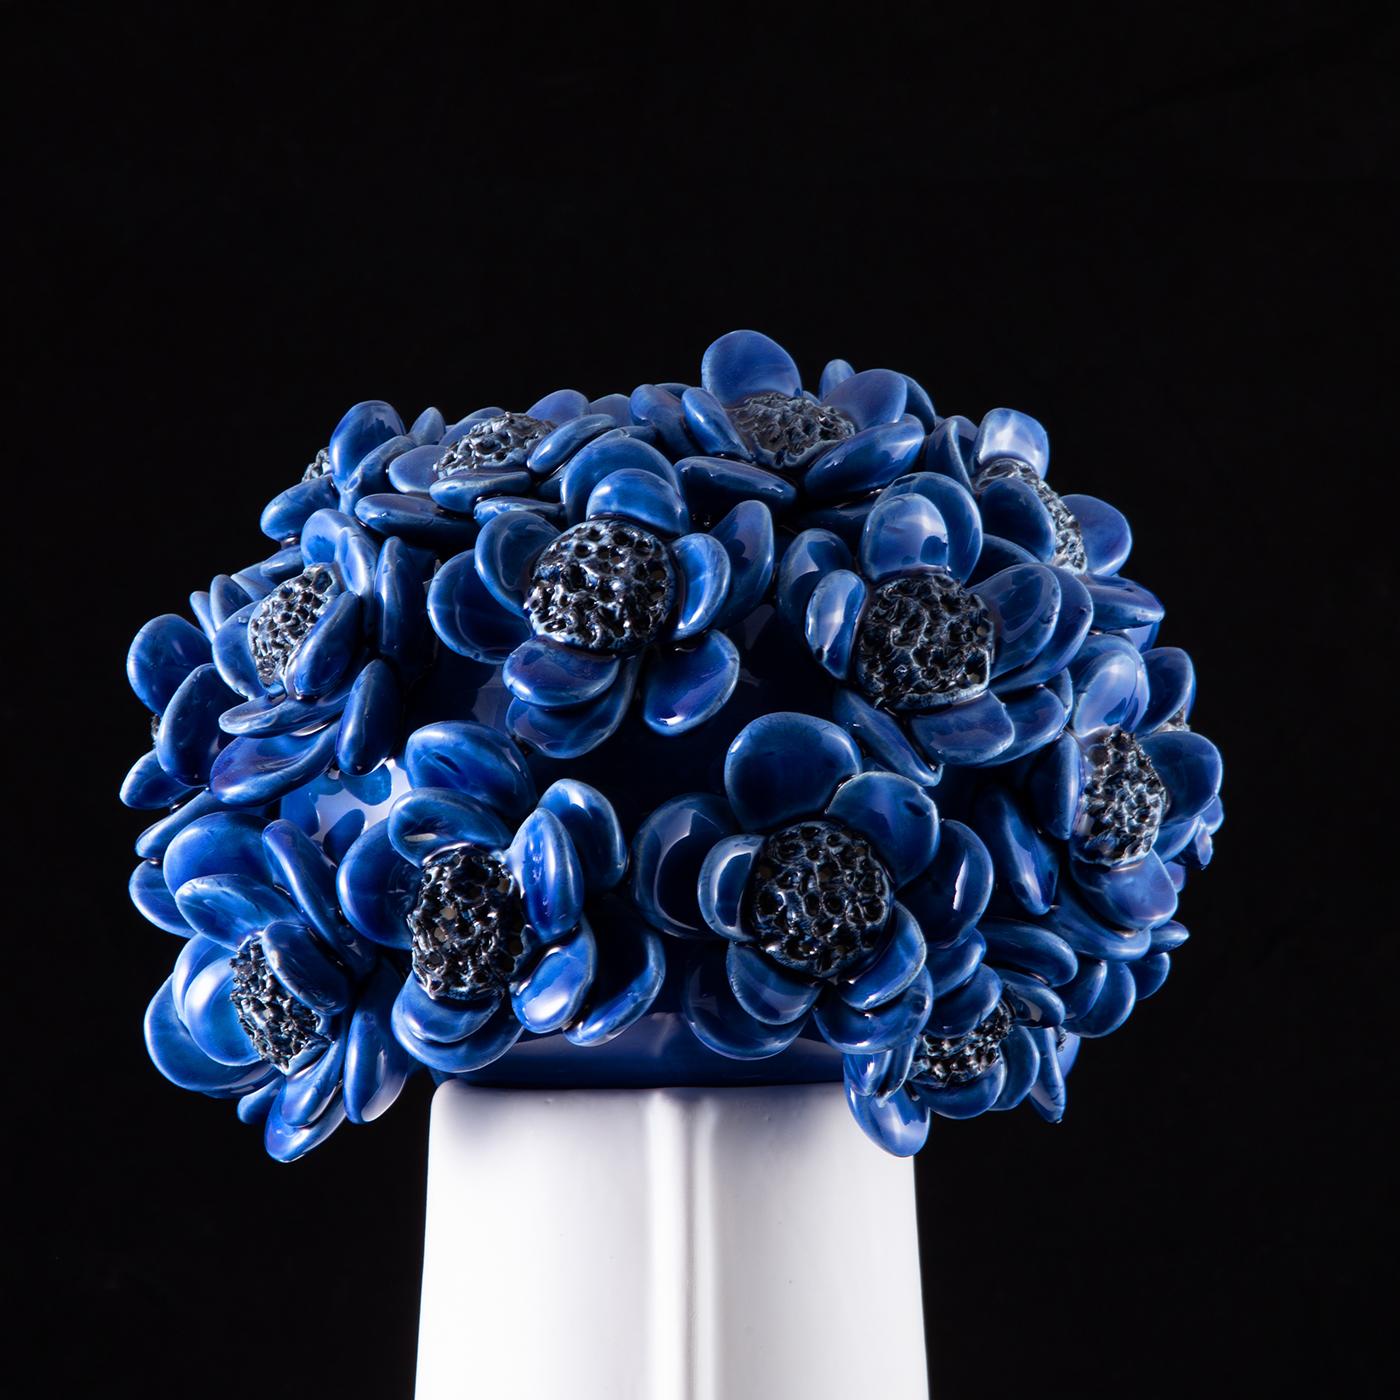 Un couvercle de fleurs de tournesol d'un bleu profond affirme au premier coup d'œil la valeur décorative incontestable de ce motif. Le corps en céramique blanc brillant sur lequel il est posé arbore d'élégants traits anthropomorphiques et dissimule